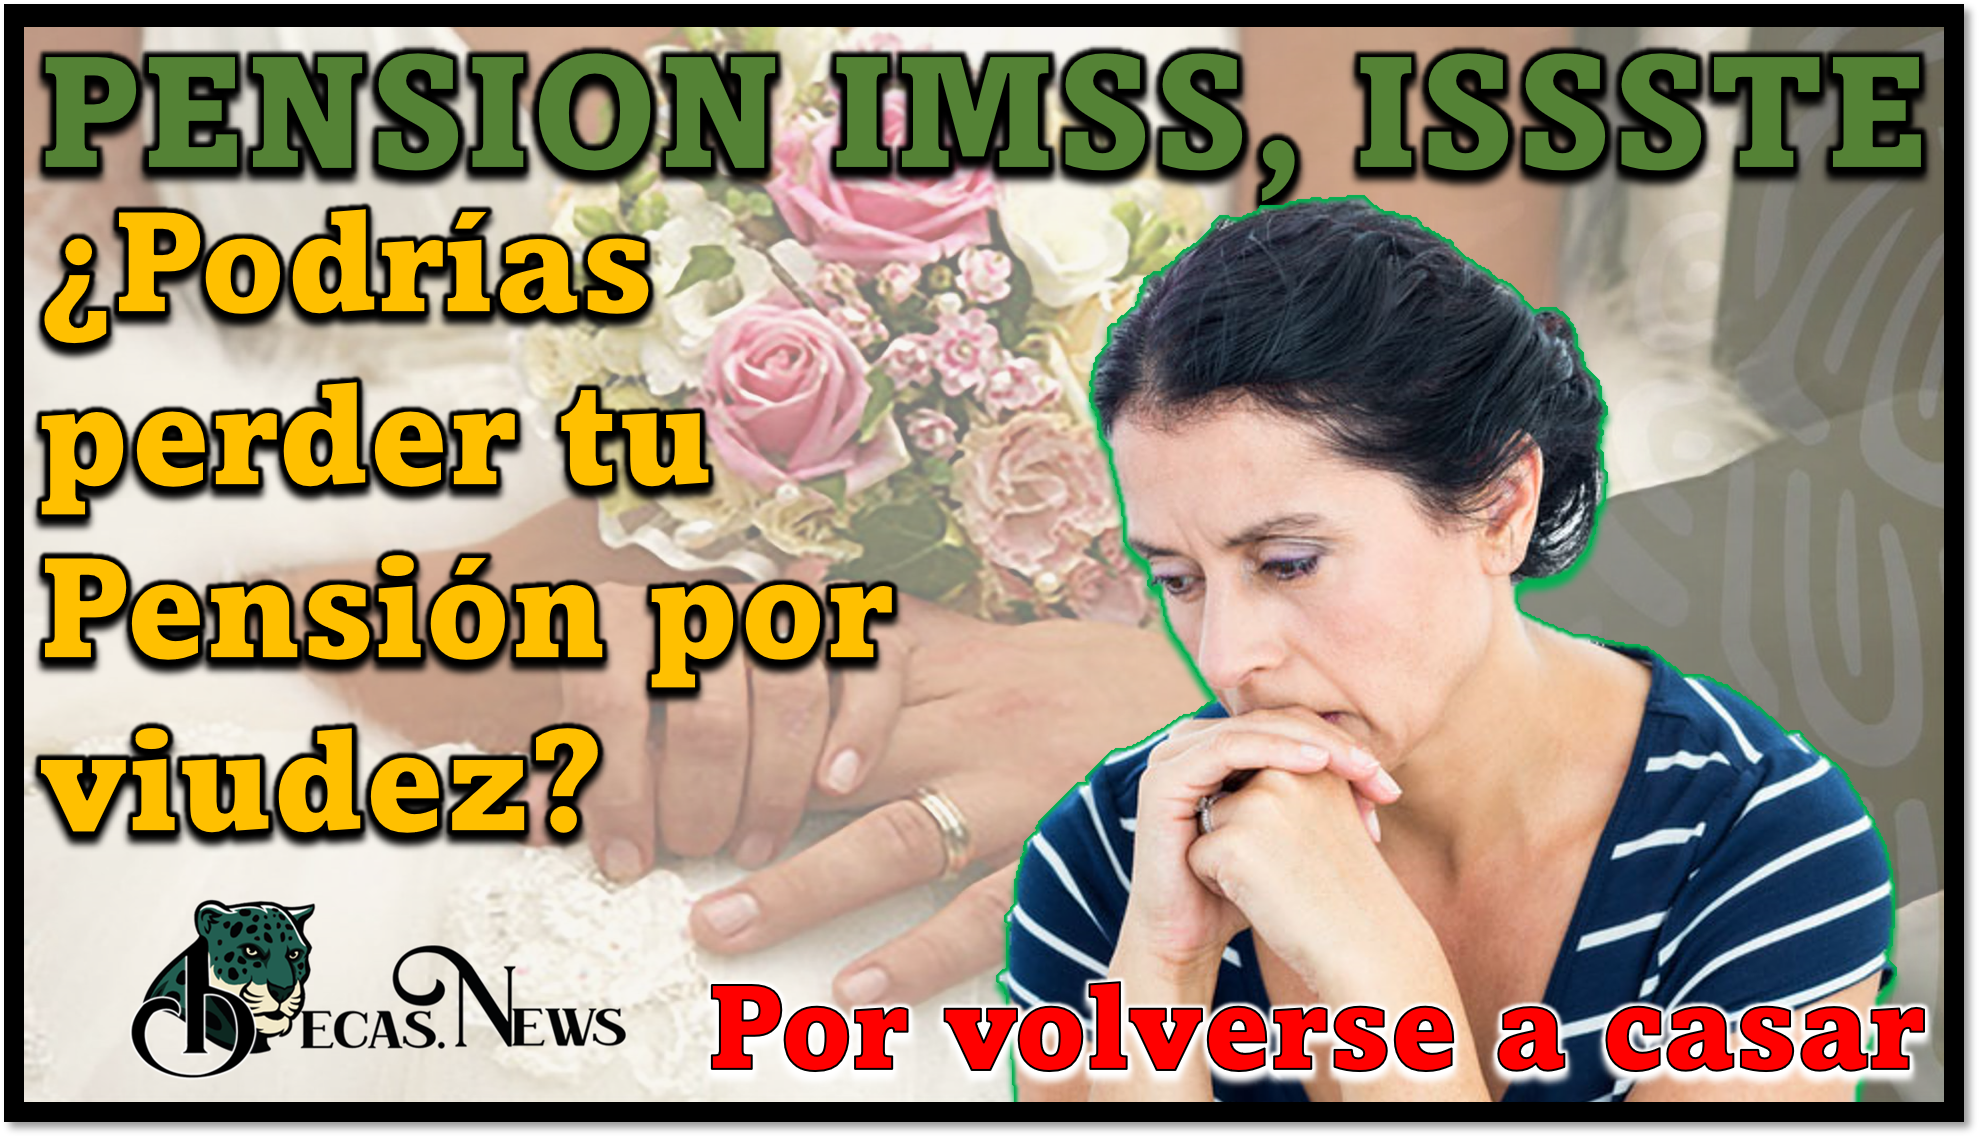 Pension IMSS, ISSSTE: ¿Podrías perder tu Pensión por viudez si te vuelves a casar?